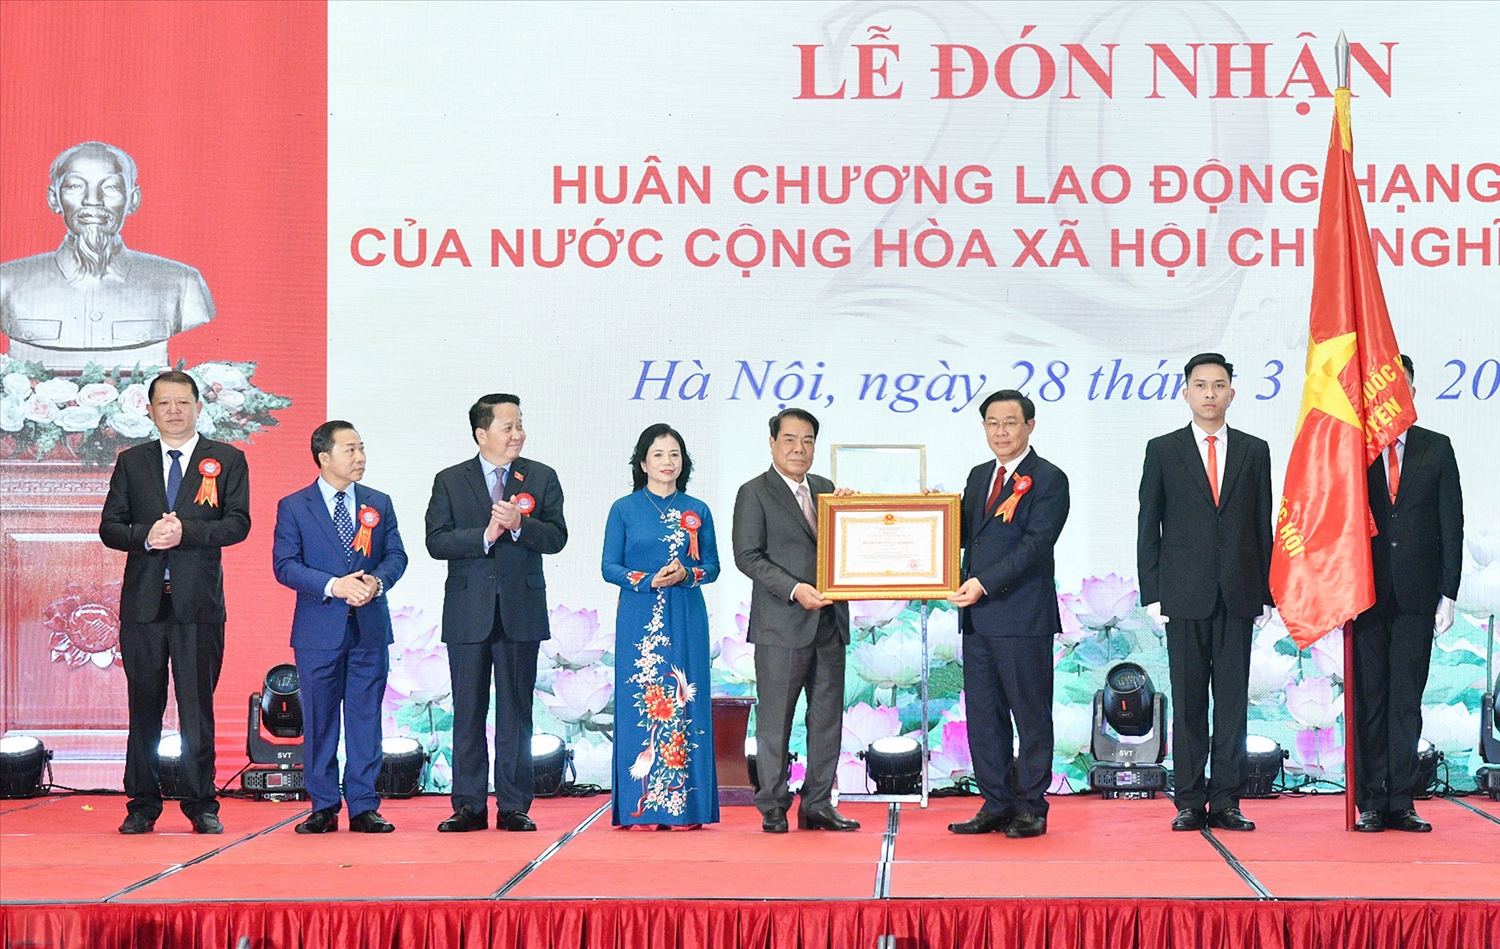 Tại buổi lễ, thay mặt lãnh đạo Đảng, Nhà nước, Ủy viên Bộ Chính trị, Chủ tịch Quốc hội Vương Đình Huệ đã trao tặng Huân chương Lao động hạng Nhì cho Ban Dân nguyện.